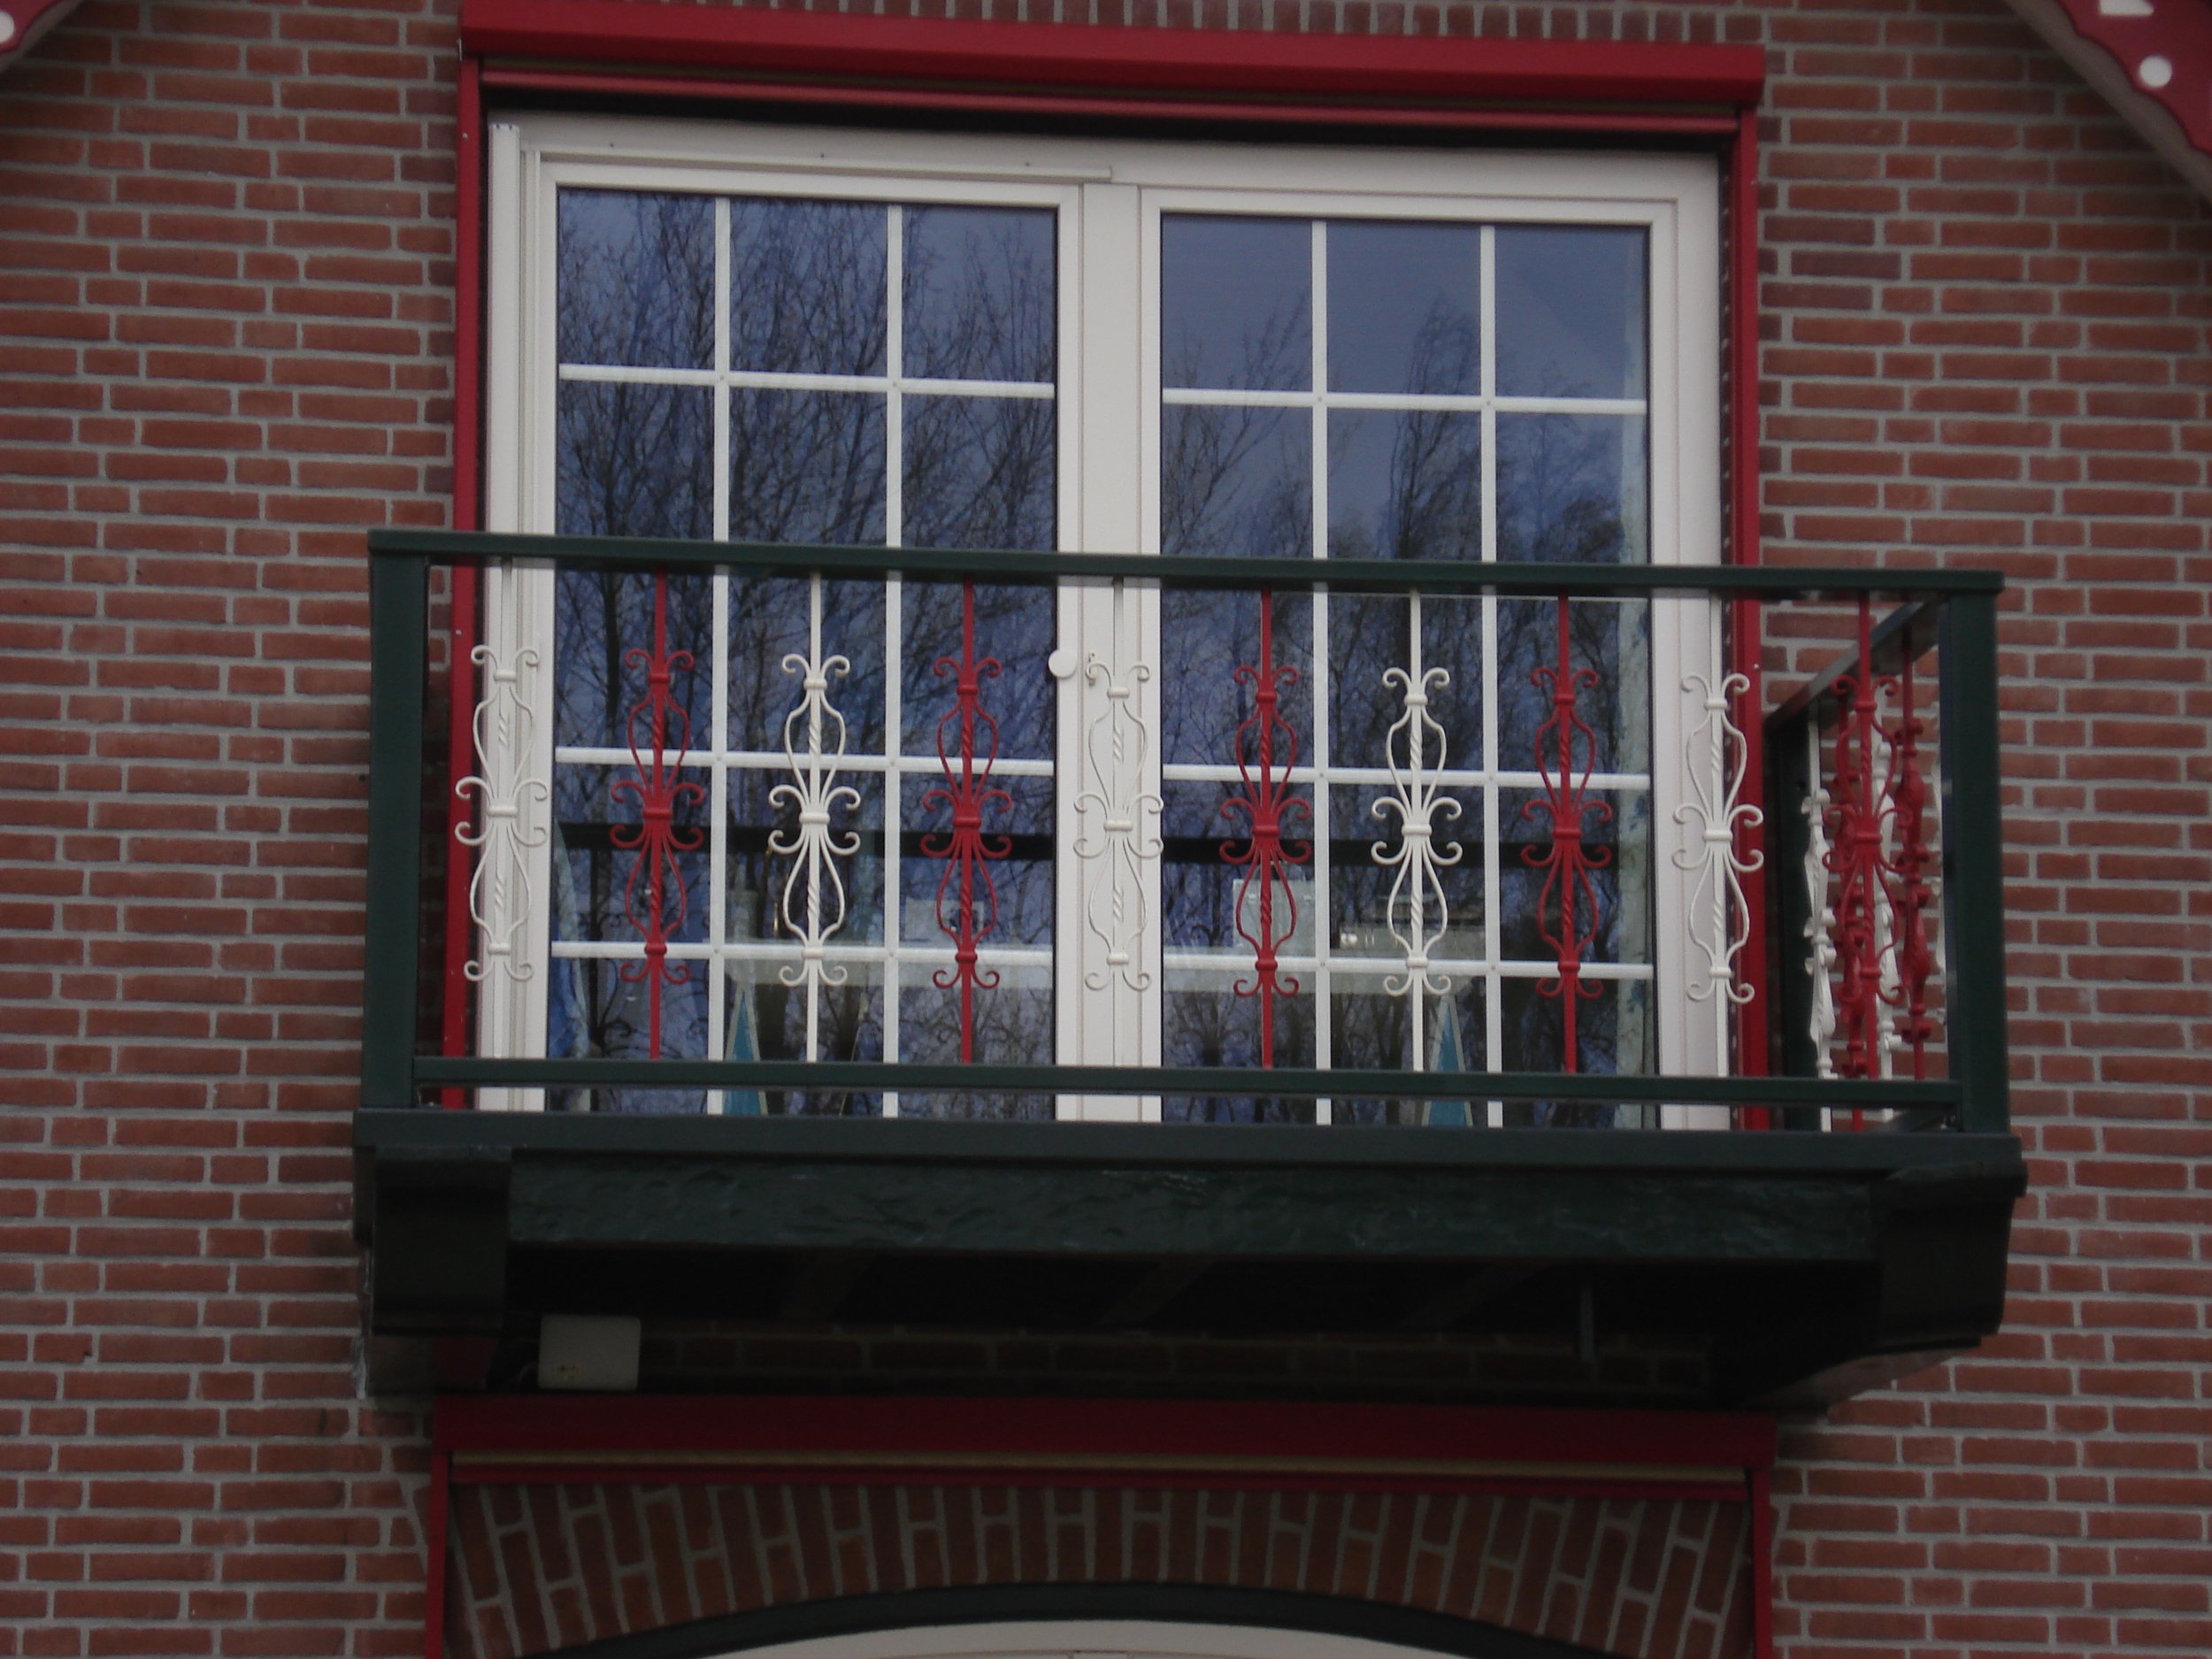 Balkonhekwerk in twee kleuren